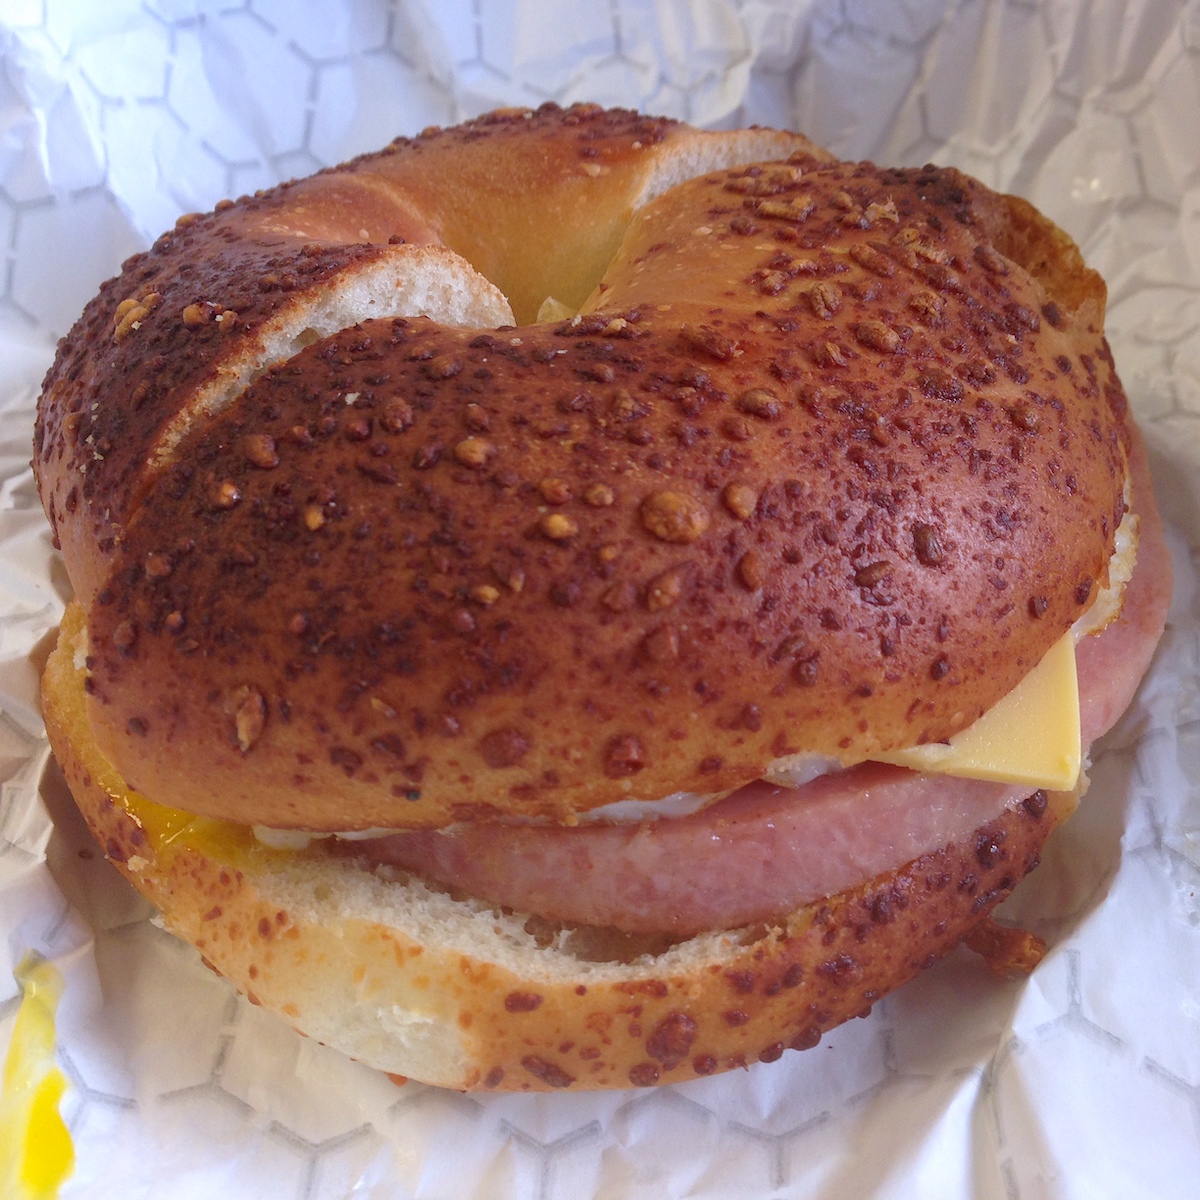 Taylor Ham Breakfast Sandwich from Jupiter Donut Factory in Jupiter, Florida